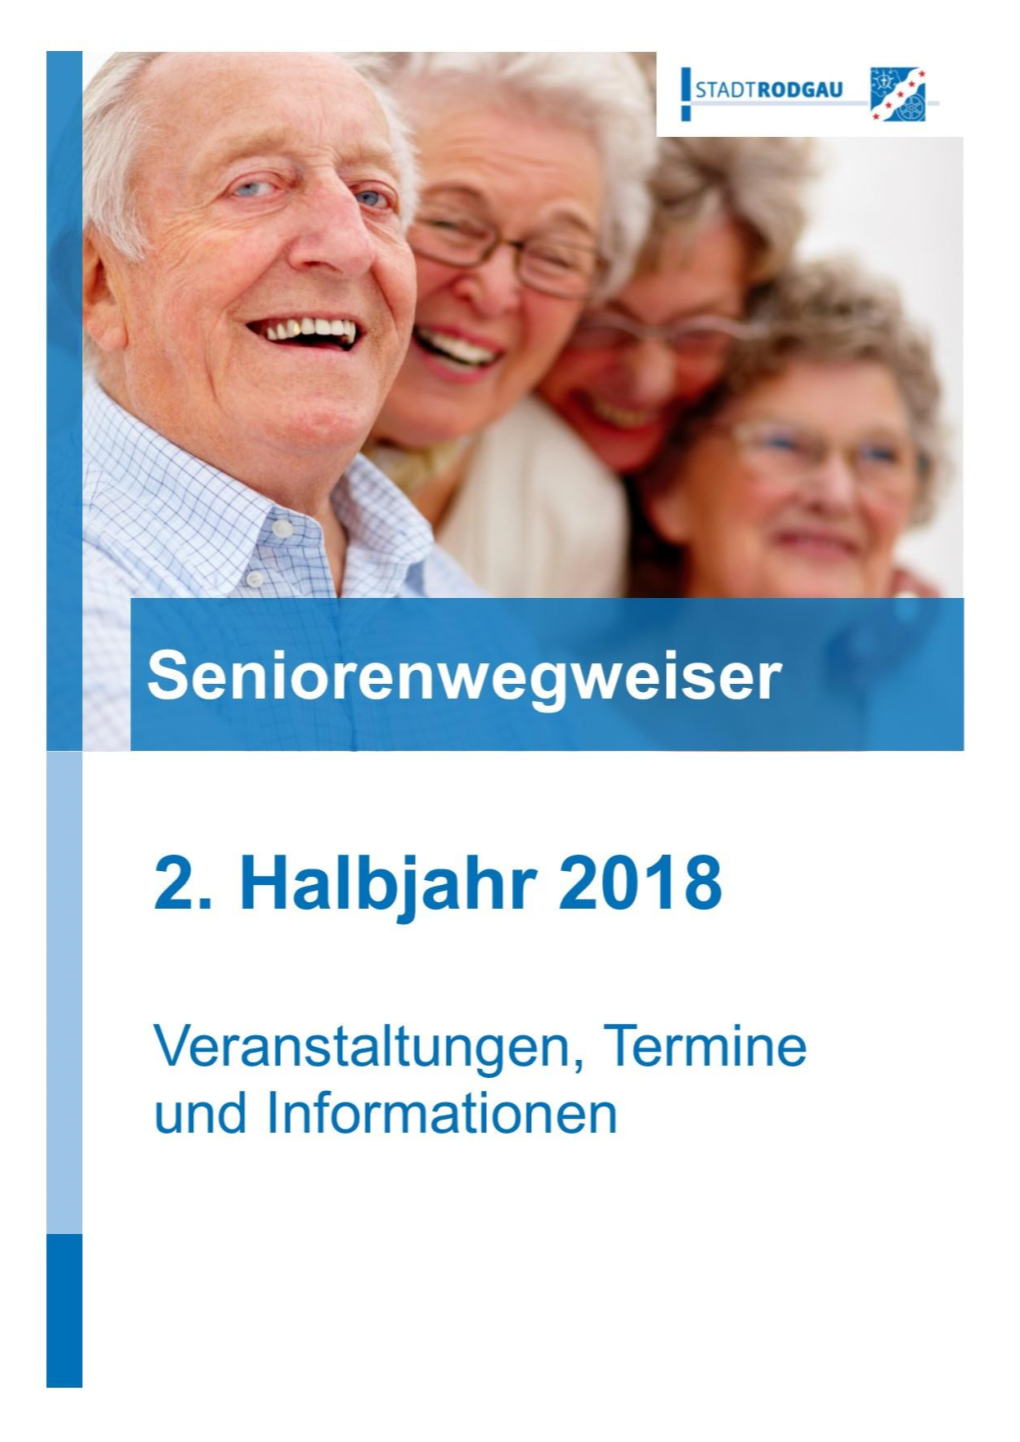 Inhaltsverzeichnis Wichtige Telefonnummern 3 Seniorenwegweiser Nachmittags in Rodgau (Seniorennachmittage) 5 Deutscher Diabetiker Bund 12 Bürgerhilfe Rodgau E.V